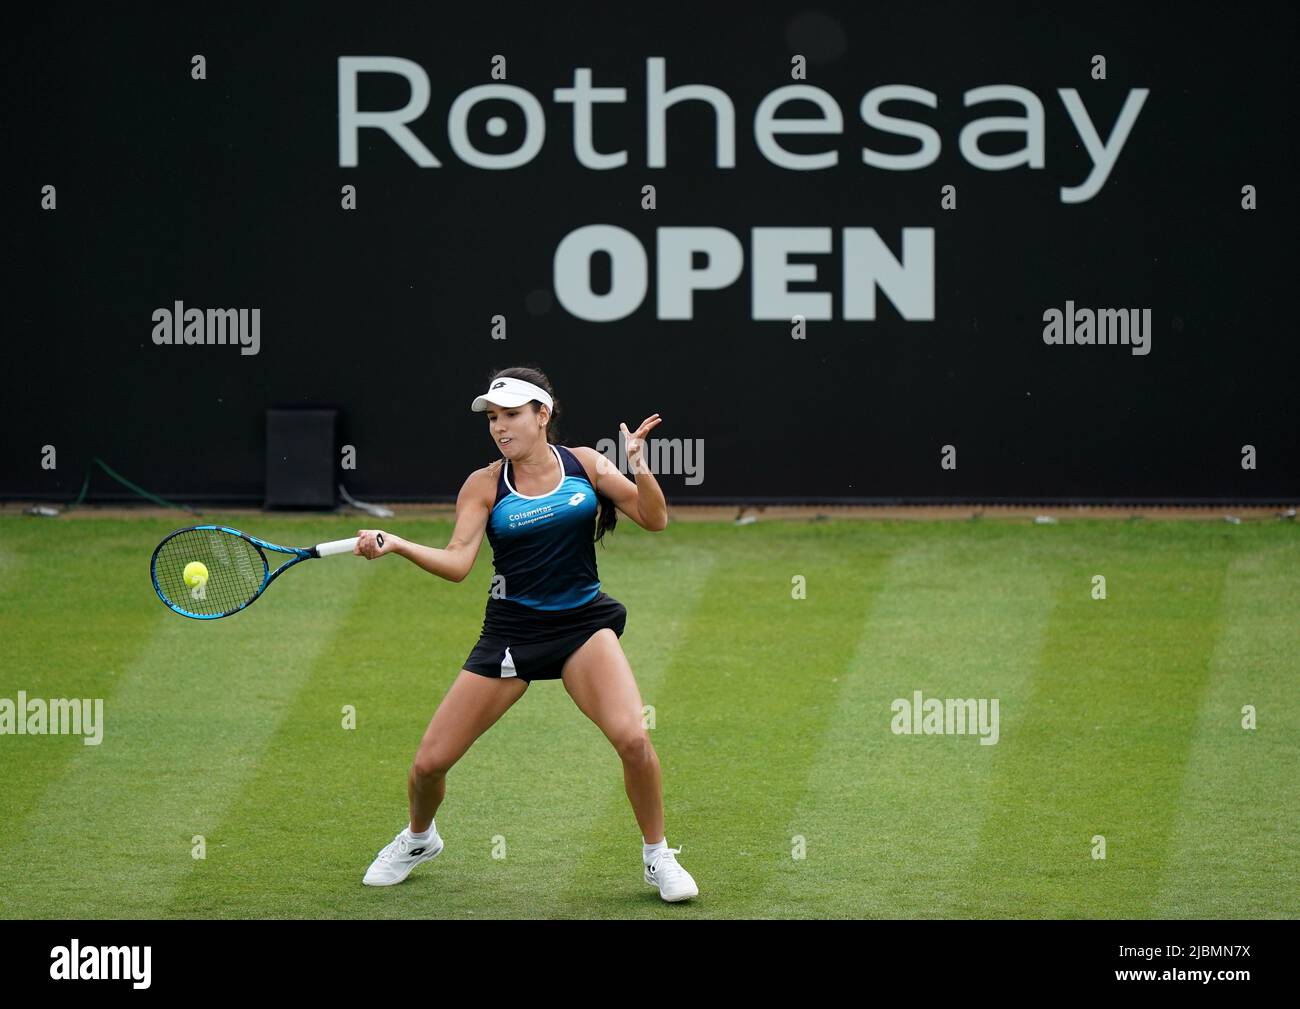 Die kolumbianische Camila Osorio während ihres Spiels gegen die griechische Maria Sakkari am vierten Tag der Rothesay Open 2022 im Nottingham Tennis Center, Nottingham. Bilddatum: Dienstag, 7. Juni 2022. Stockfoto